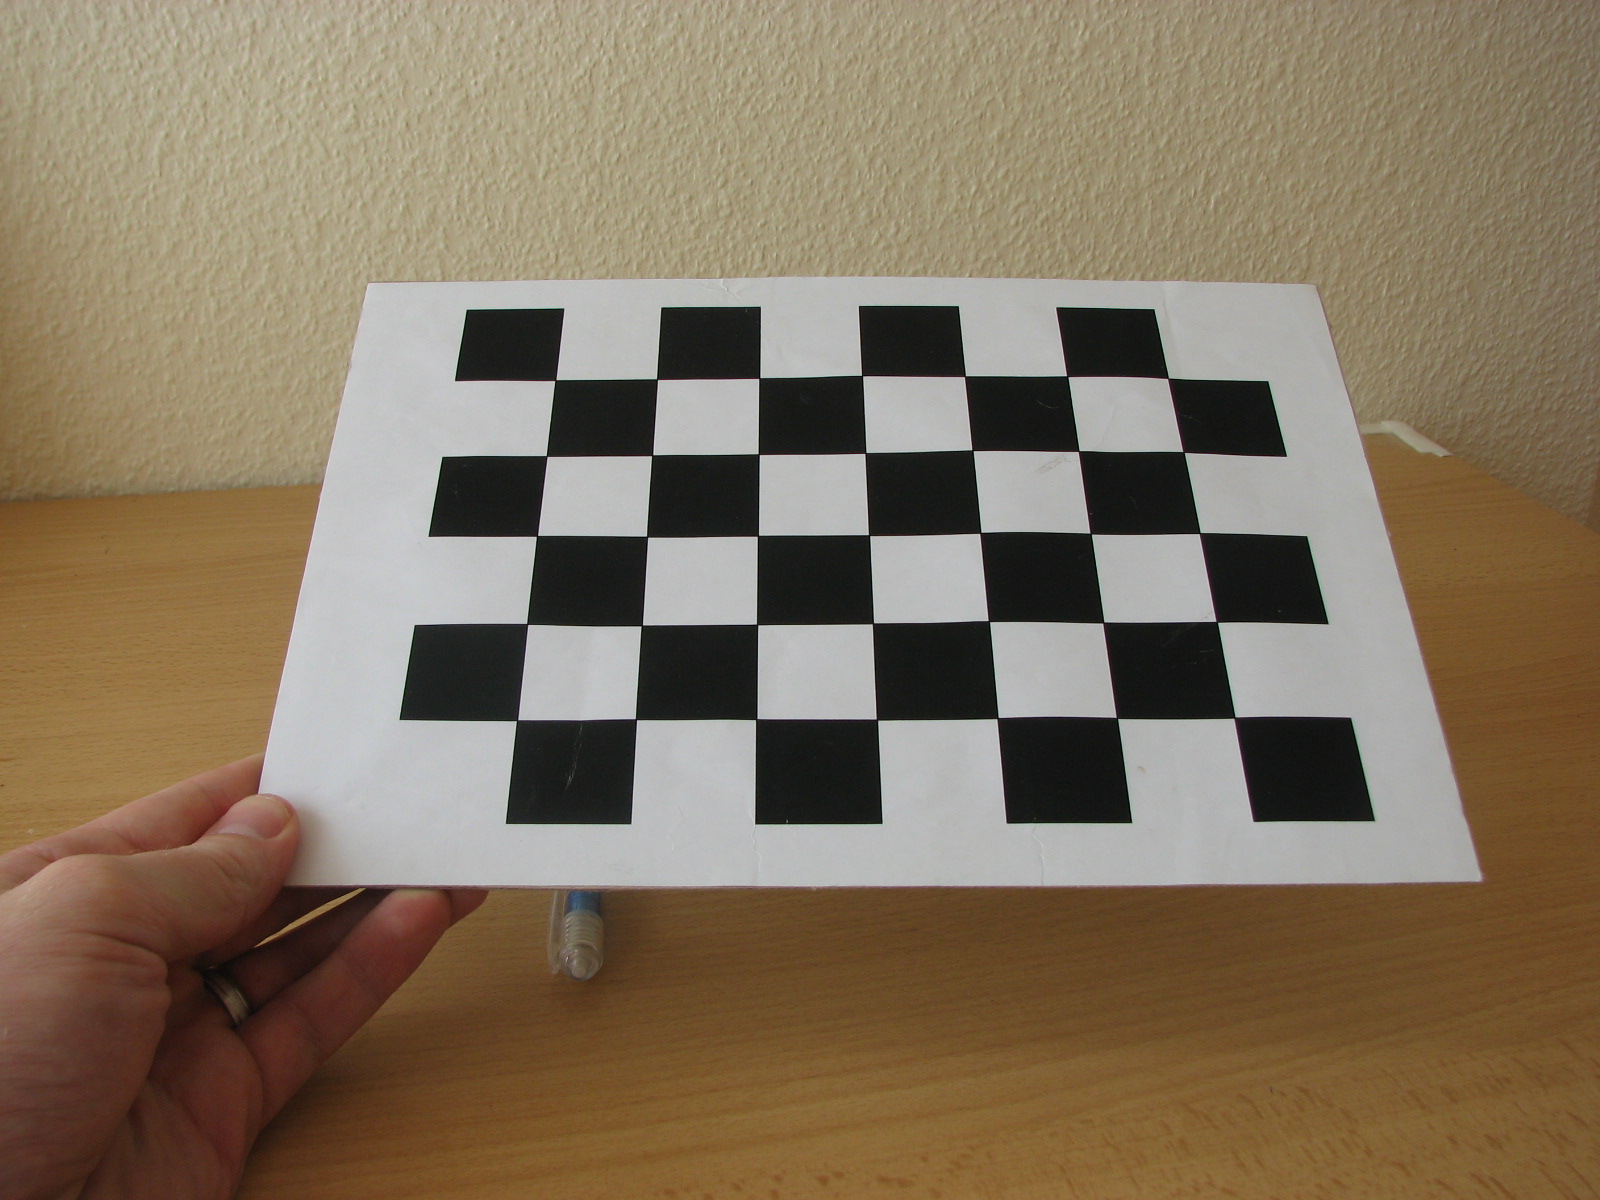 Шахматная доска на экране монитора. Chessboard Calibration. Шахматная доска прямоугольная. Поле шахматной доски. Шахматный паттерн.